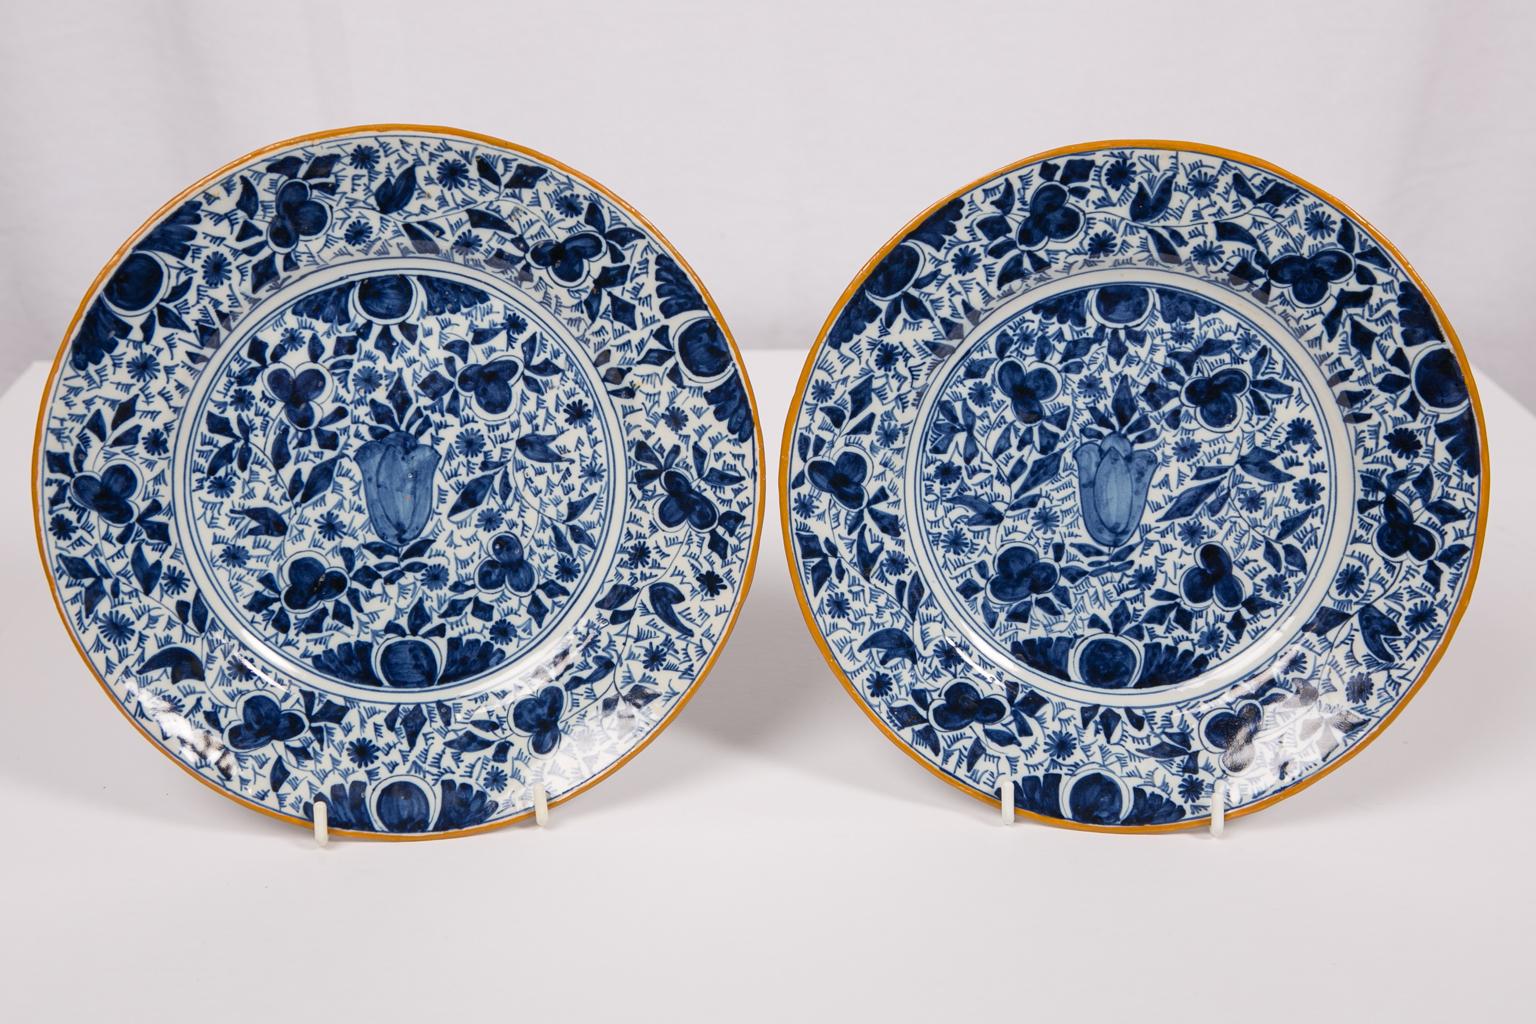 Wir freuen uns:: dieses Paar antiker blau-weißer Delfter Teller anbieten zu können:: die mit einer zentralen Tulpenzwiebel und einem Gesamtmuster aus Blumen und Blättern handbemalt sind. Der Rand ist mit ockerfarbenem Schlicker bemalt. Der